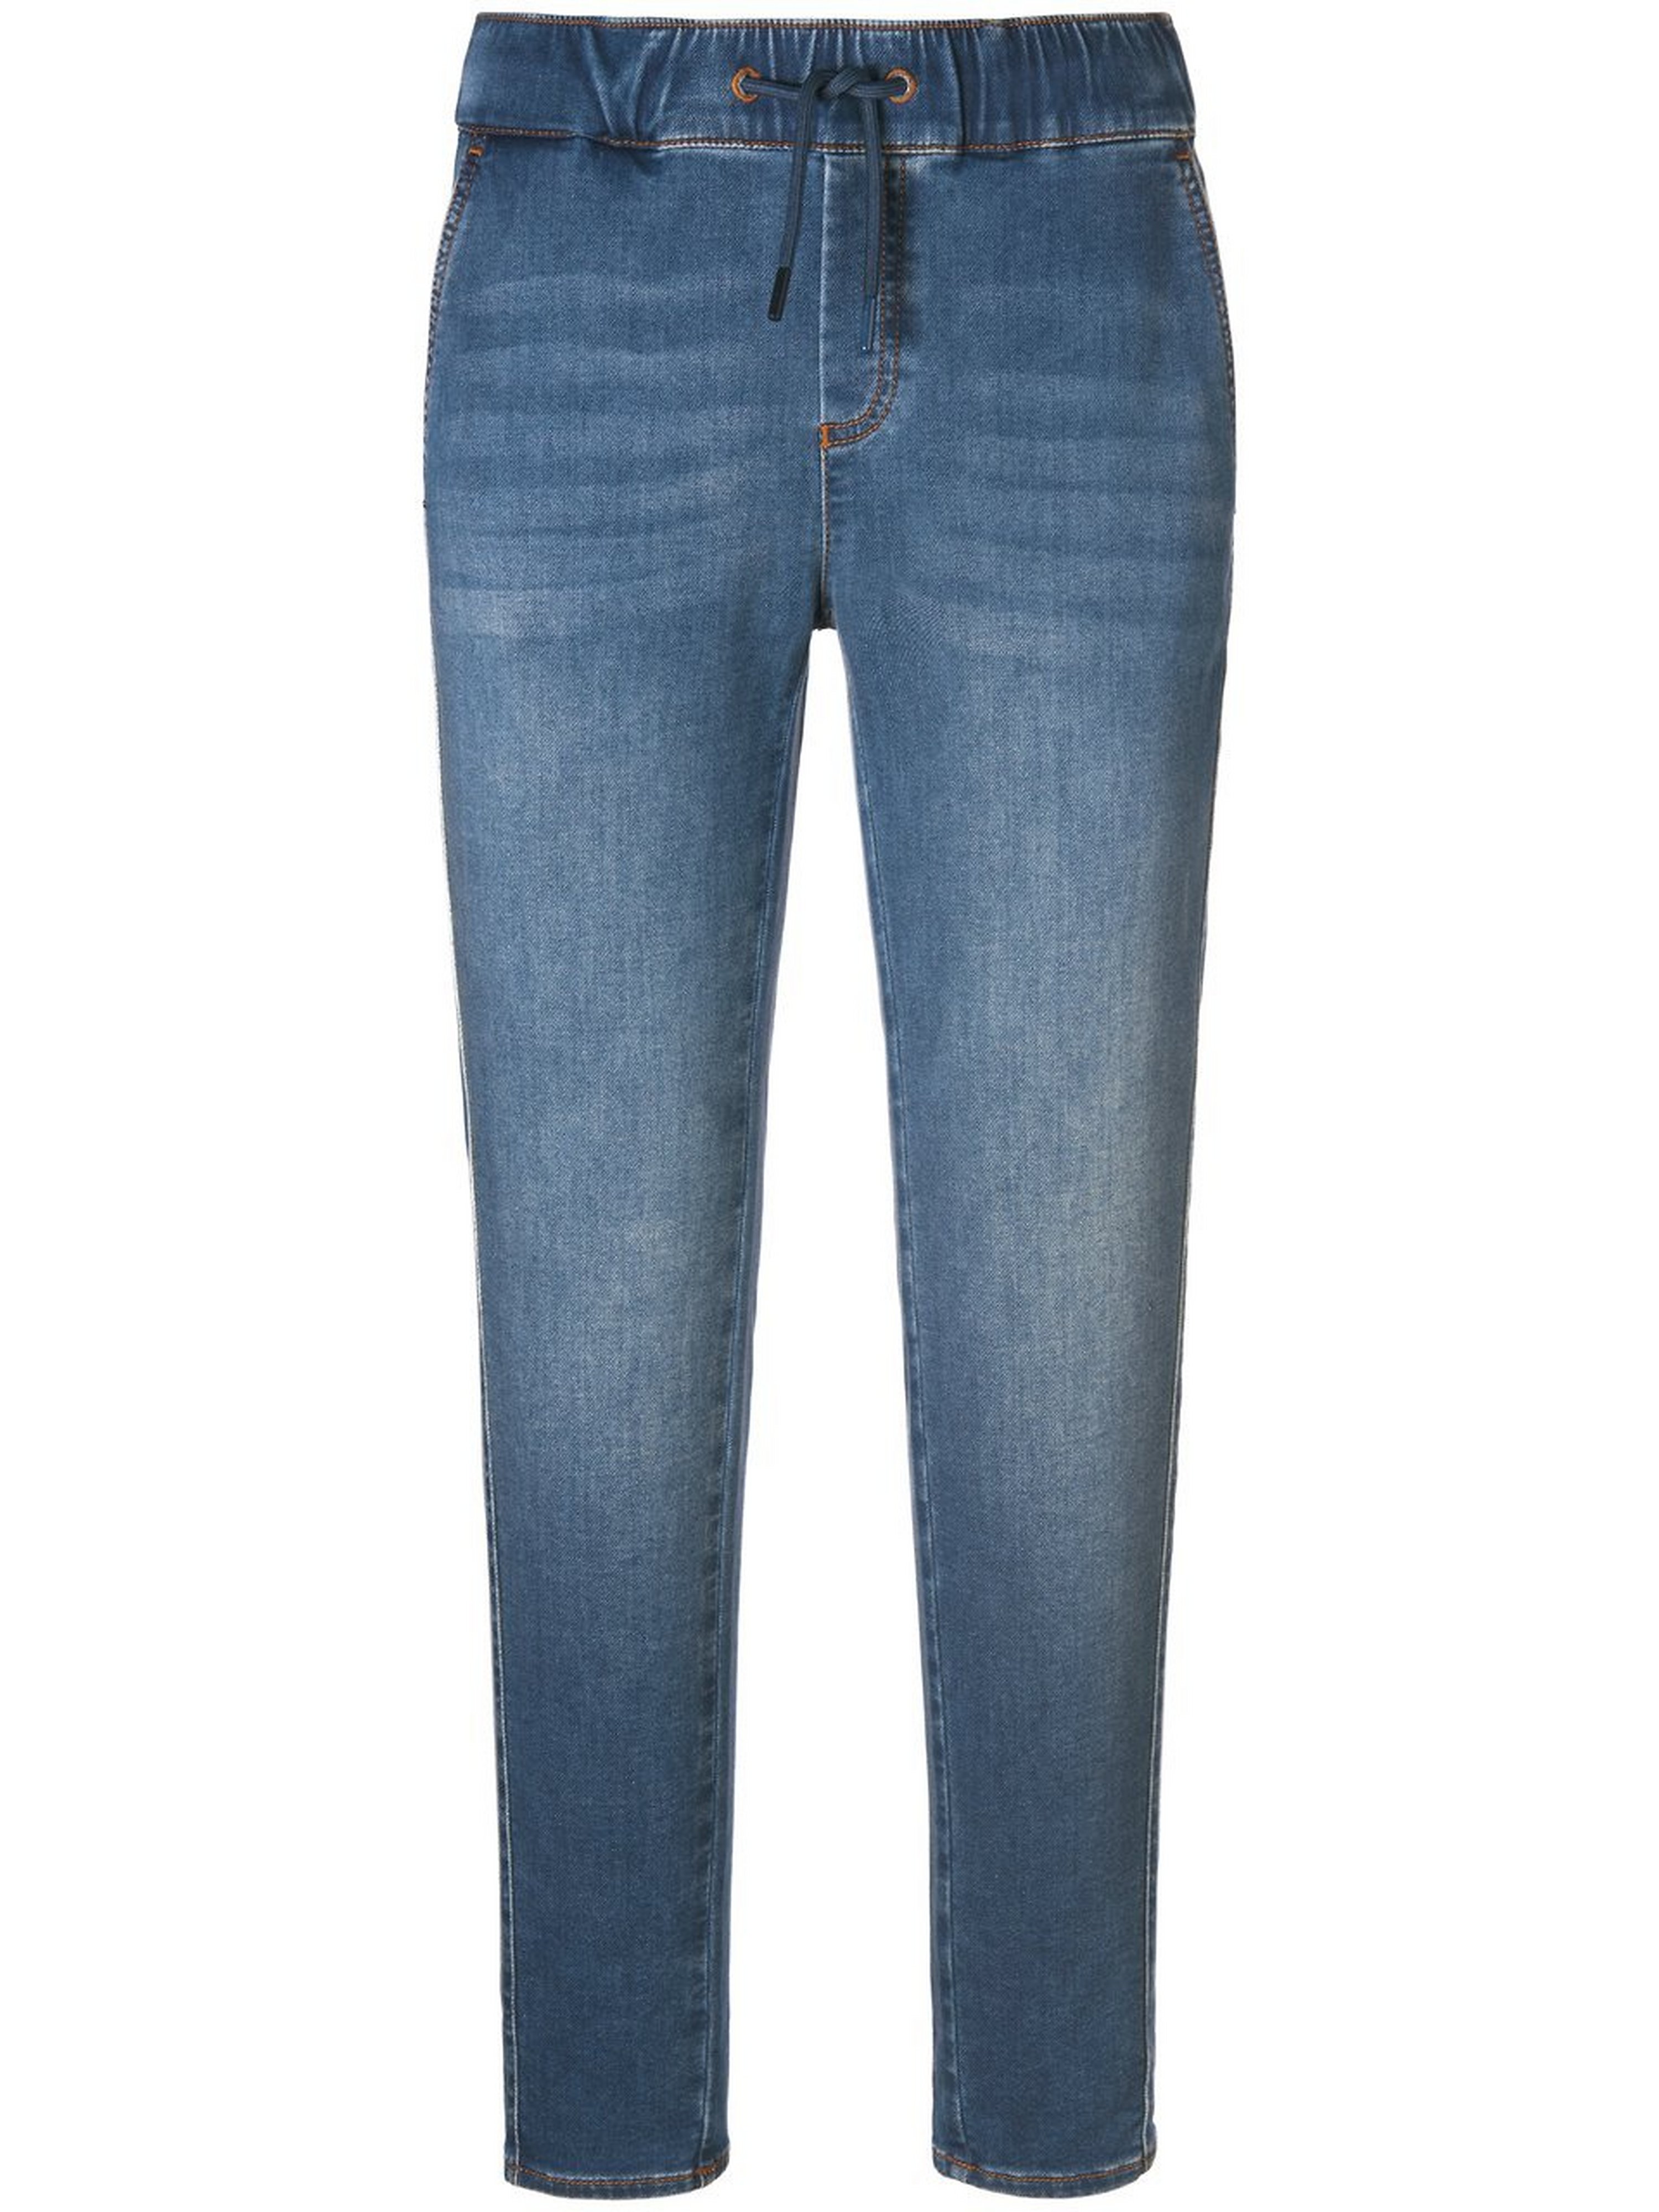 Enkellange jeans in jogg pant stijl pasvorm Sylvia Van Peter Hahn denim